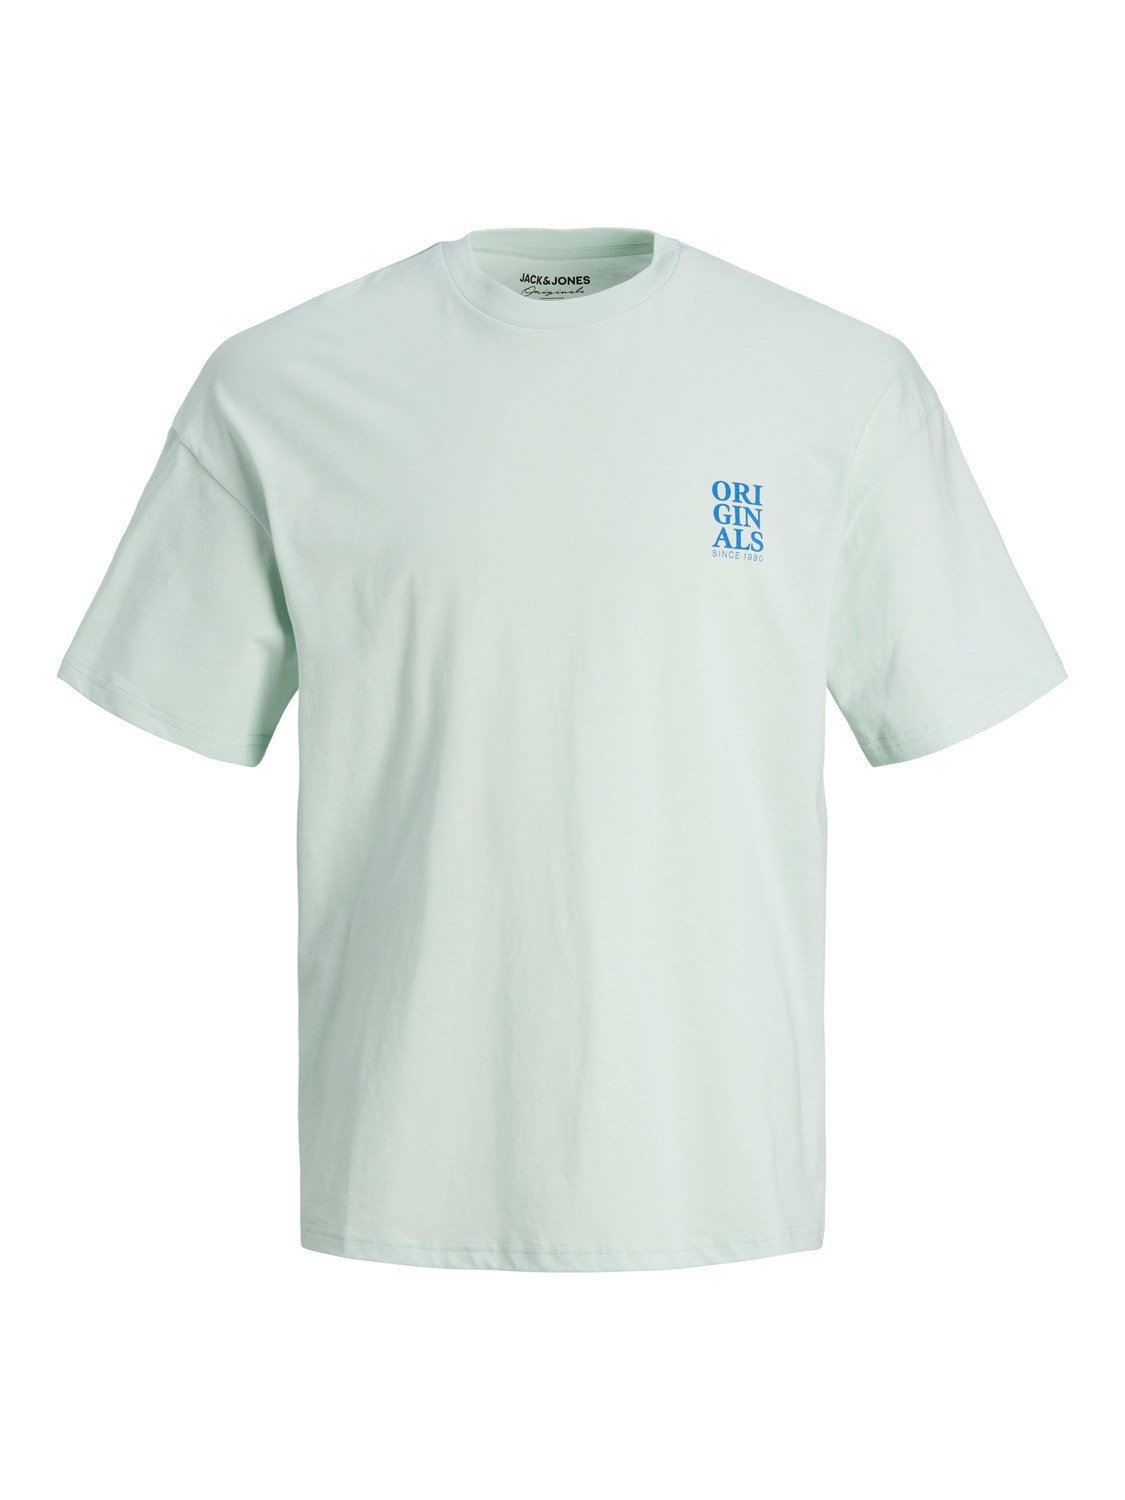 Jack & Jones Plain Crew neck T-shirt -Pale Blue - 12238375